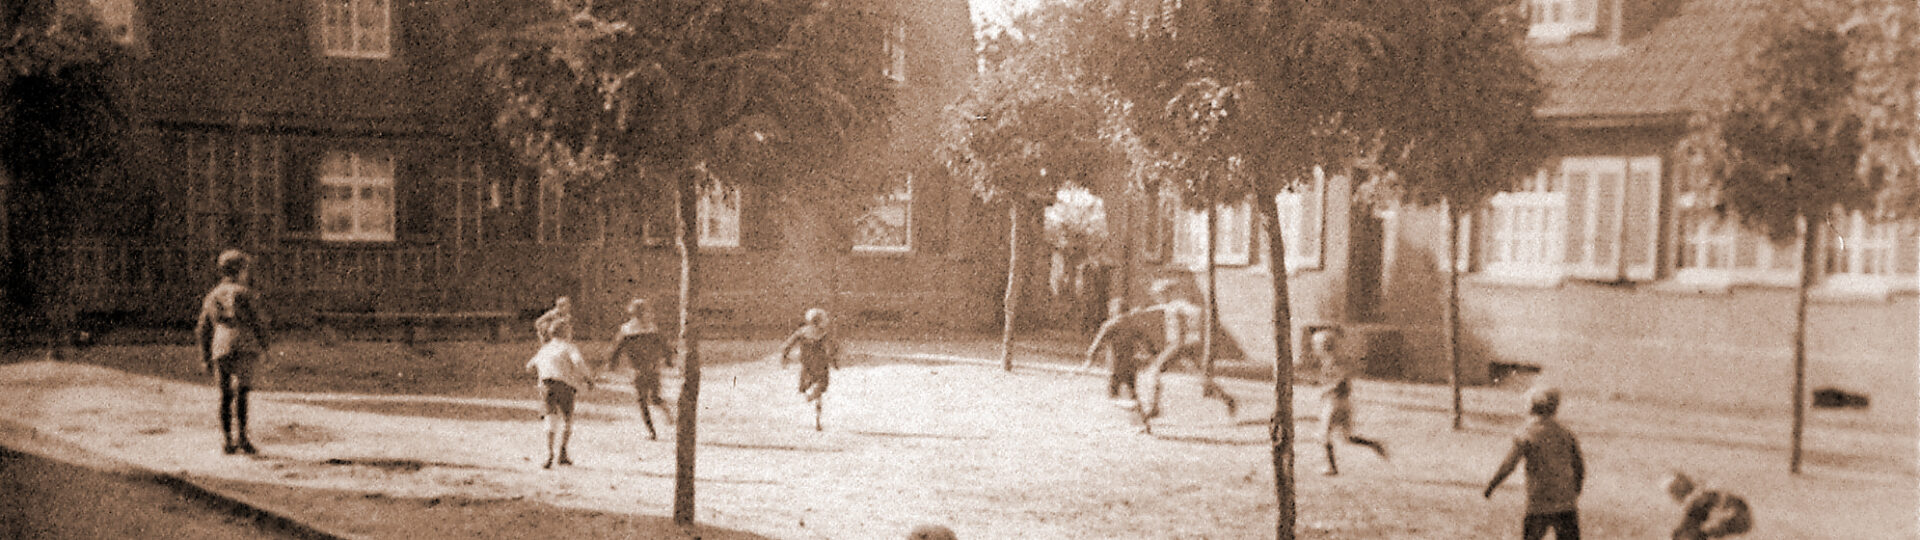 Kinder spielen auf dem Zeppelinplatz 1927, zur Verfügung gestellt von Dirk Blotevogel (siehe Ausstellung zum 75-jährigen Jubiläum der Kolonie)